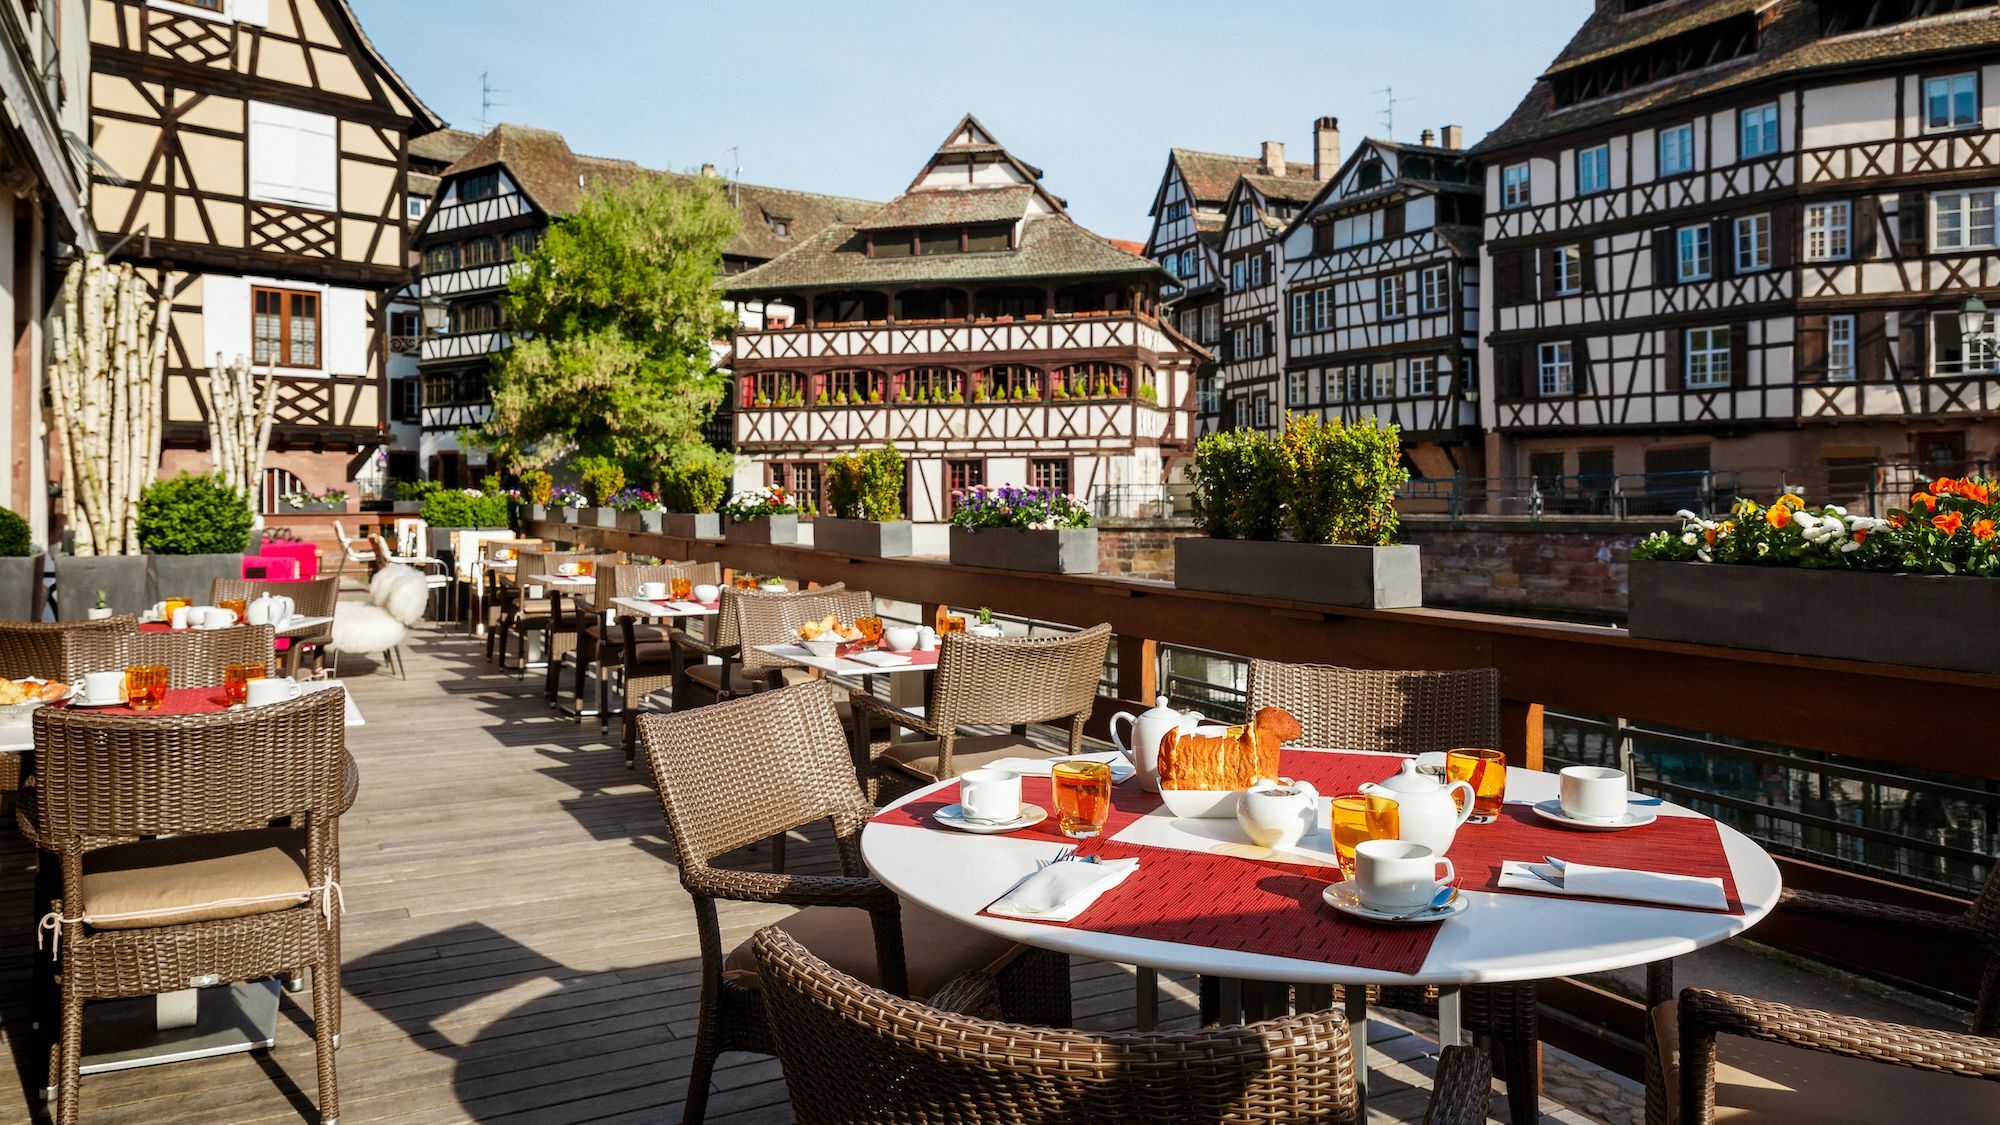 Voici Les Meilleurs Restaurants De Strasbourg Selon Chat Gpt Le